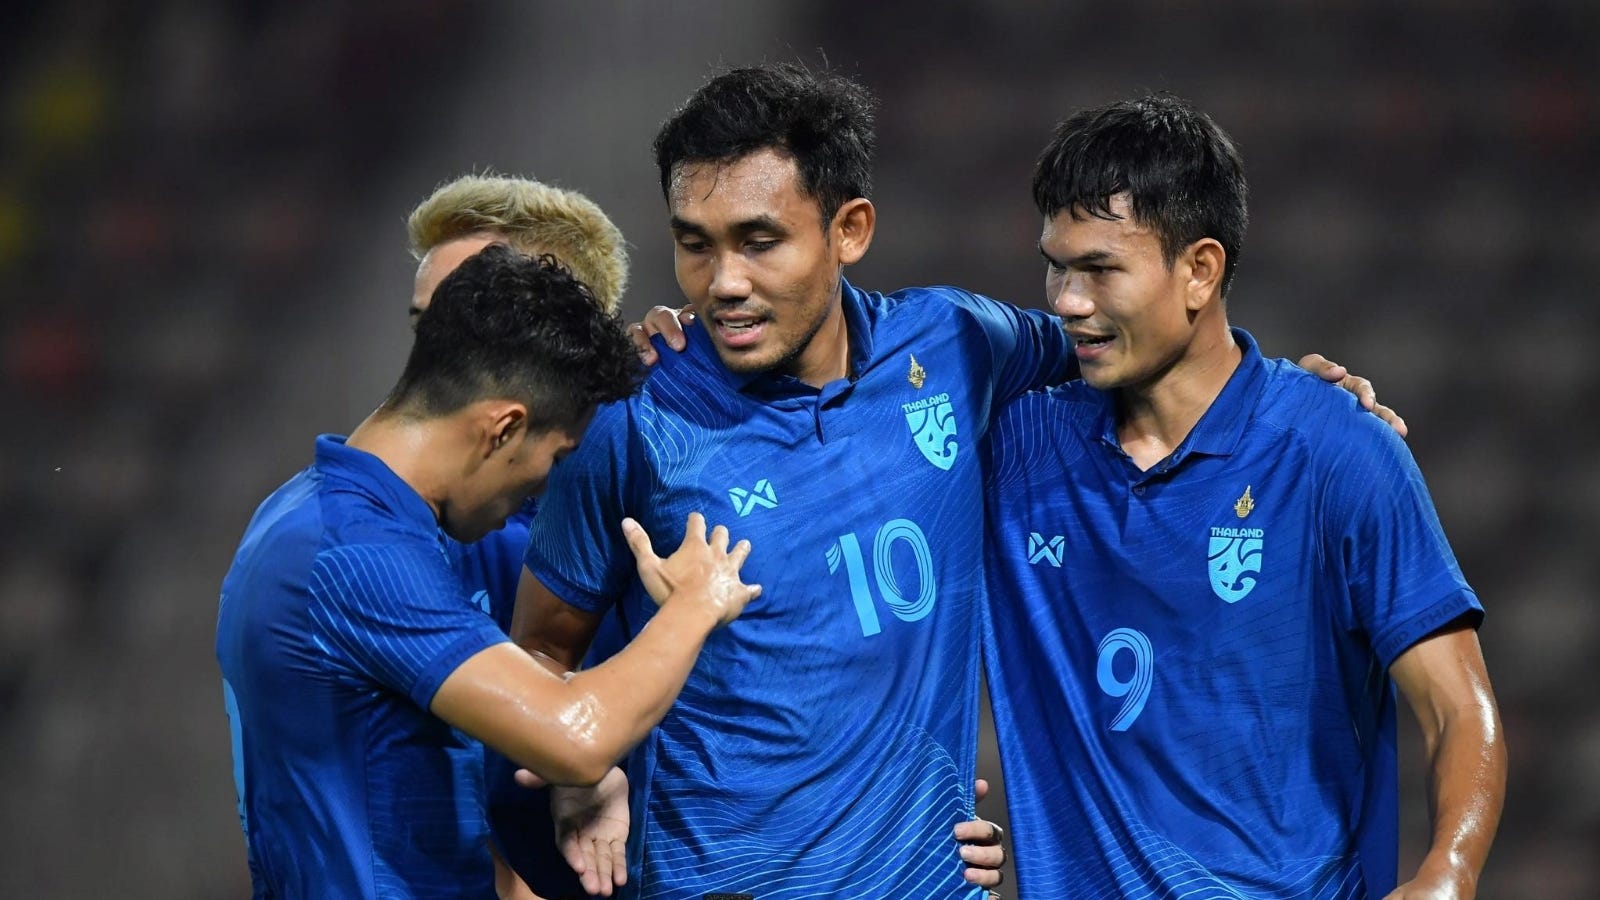 เอเอฟเอฟ 2022 รอบชิงชนะเลิศ เลกแรก เวียดนาม-ไทย : ความพร้อม, รายชื่อนักเตะ, โปรแกรมถ่ายทอดสด ฯลฯ | Goal.com ภาษาไทย